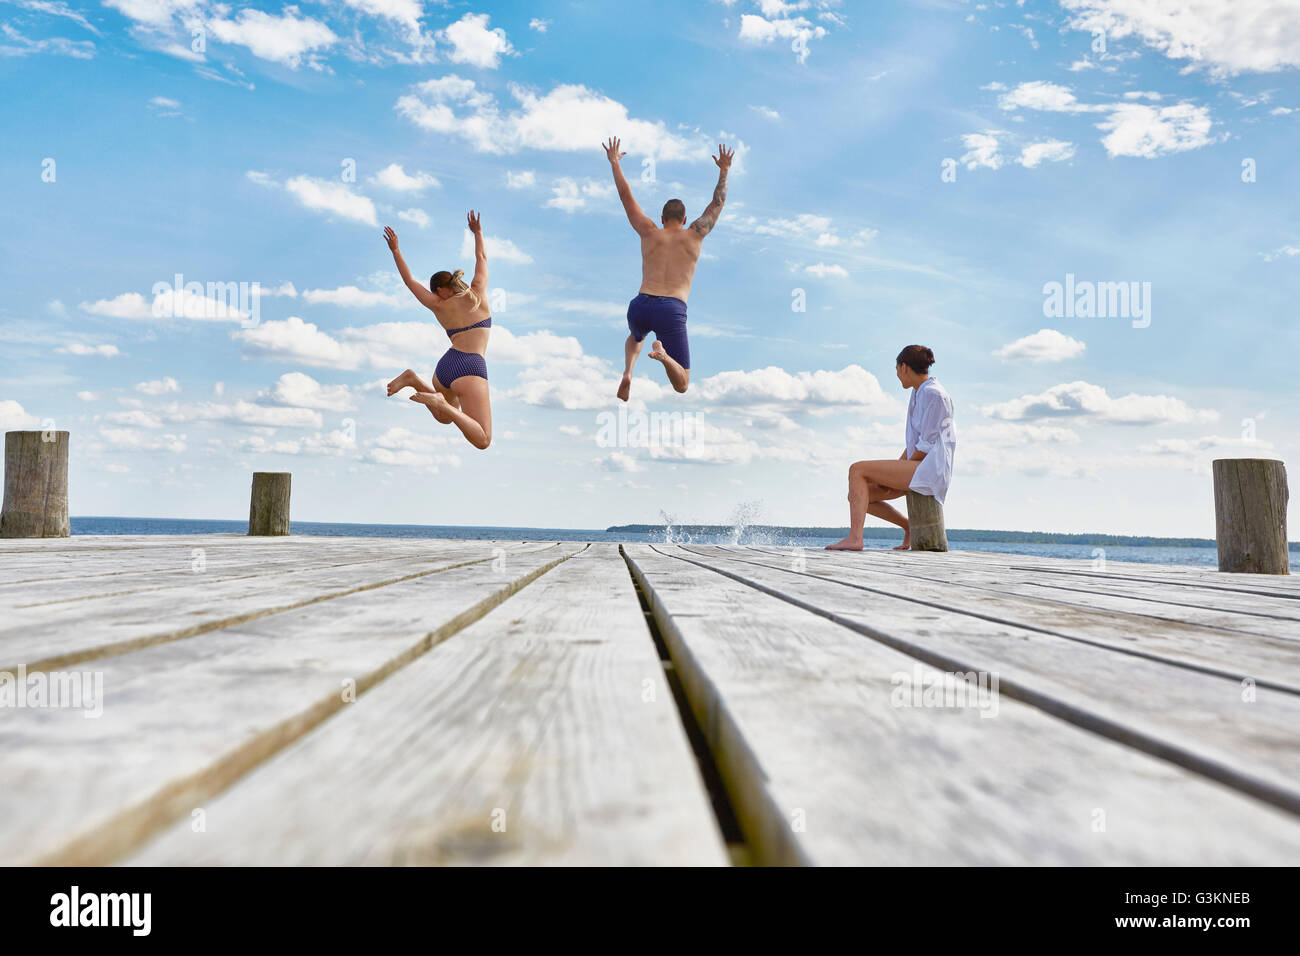 Jeune femme assise sur le post sur l'embarcadère en bois, regarder les amis comme ils sautent dans la mer Banque D'Images